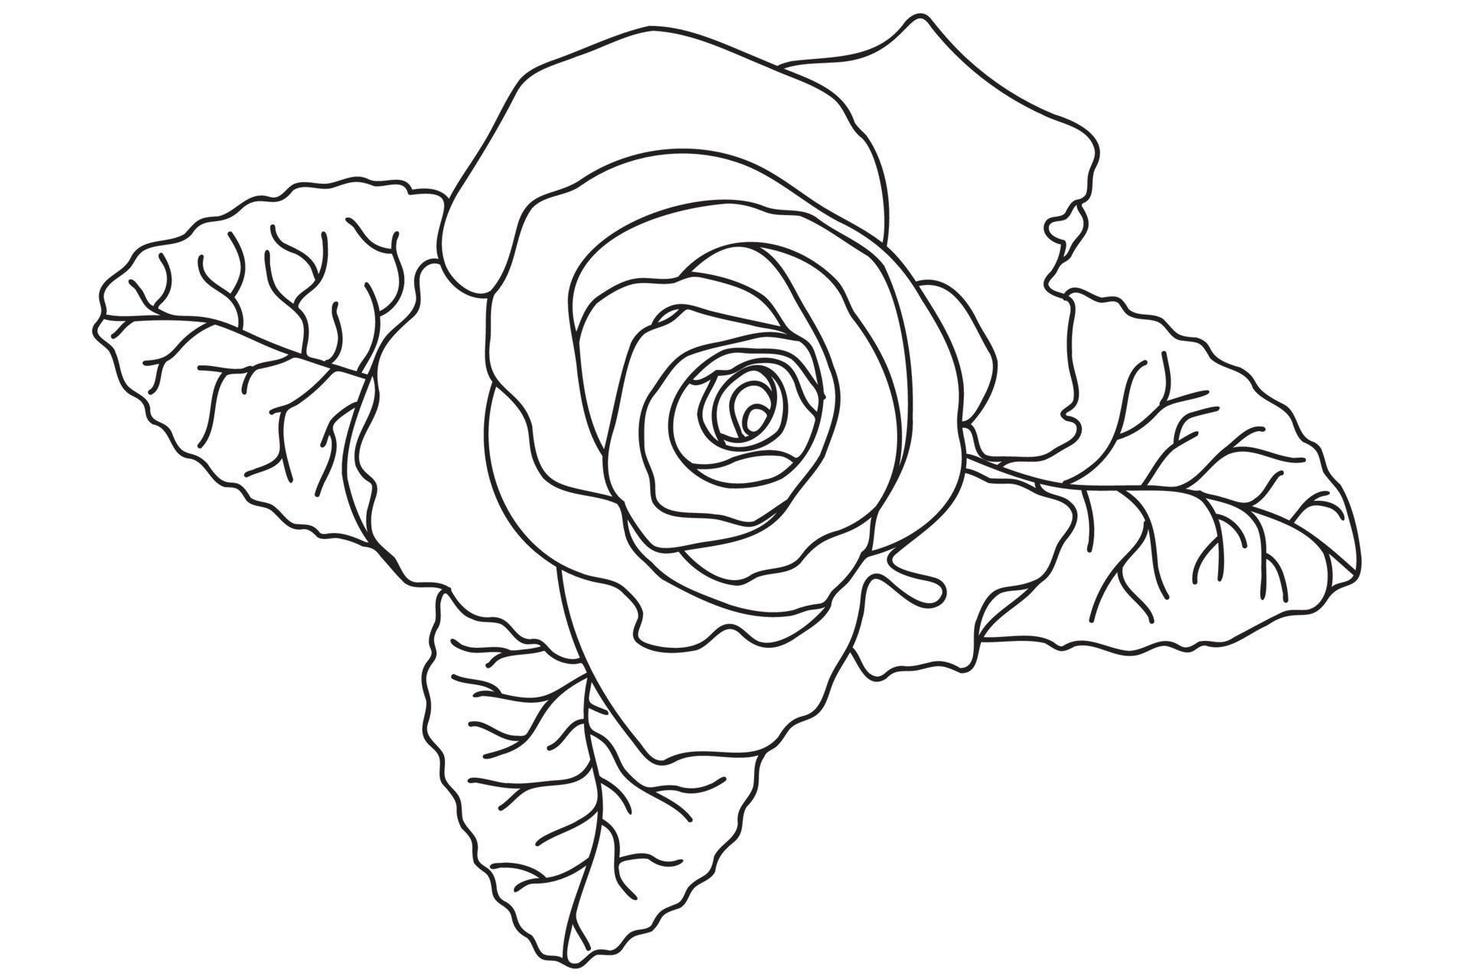 en enda ros är ritad med en svart kontur, den är avsedd för tatuering, tryck, kort, tygtryck, 8 mars, valentine, etikett, logotyp och andra tillfällen. vektor